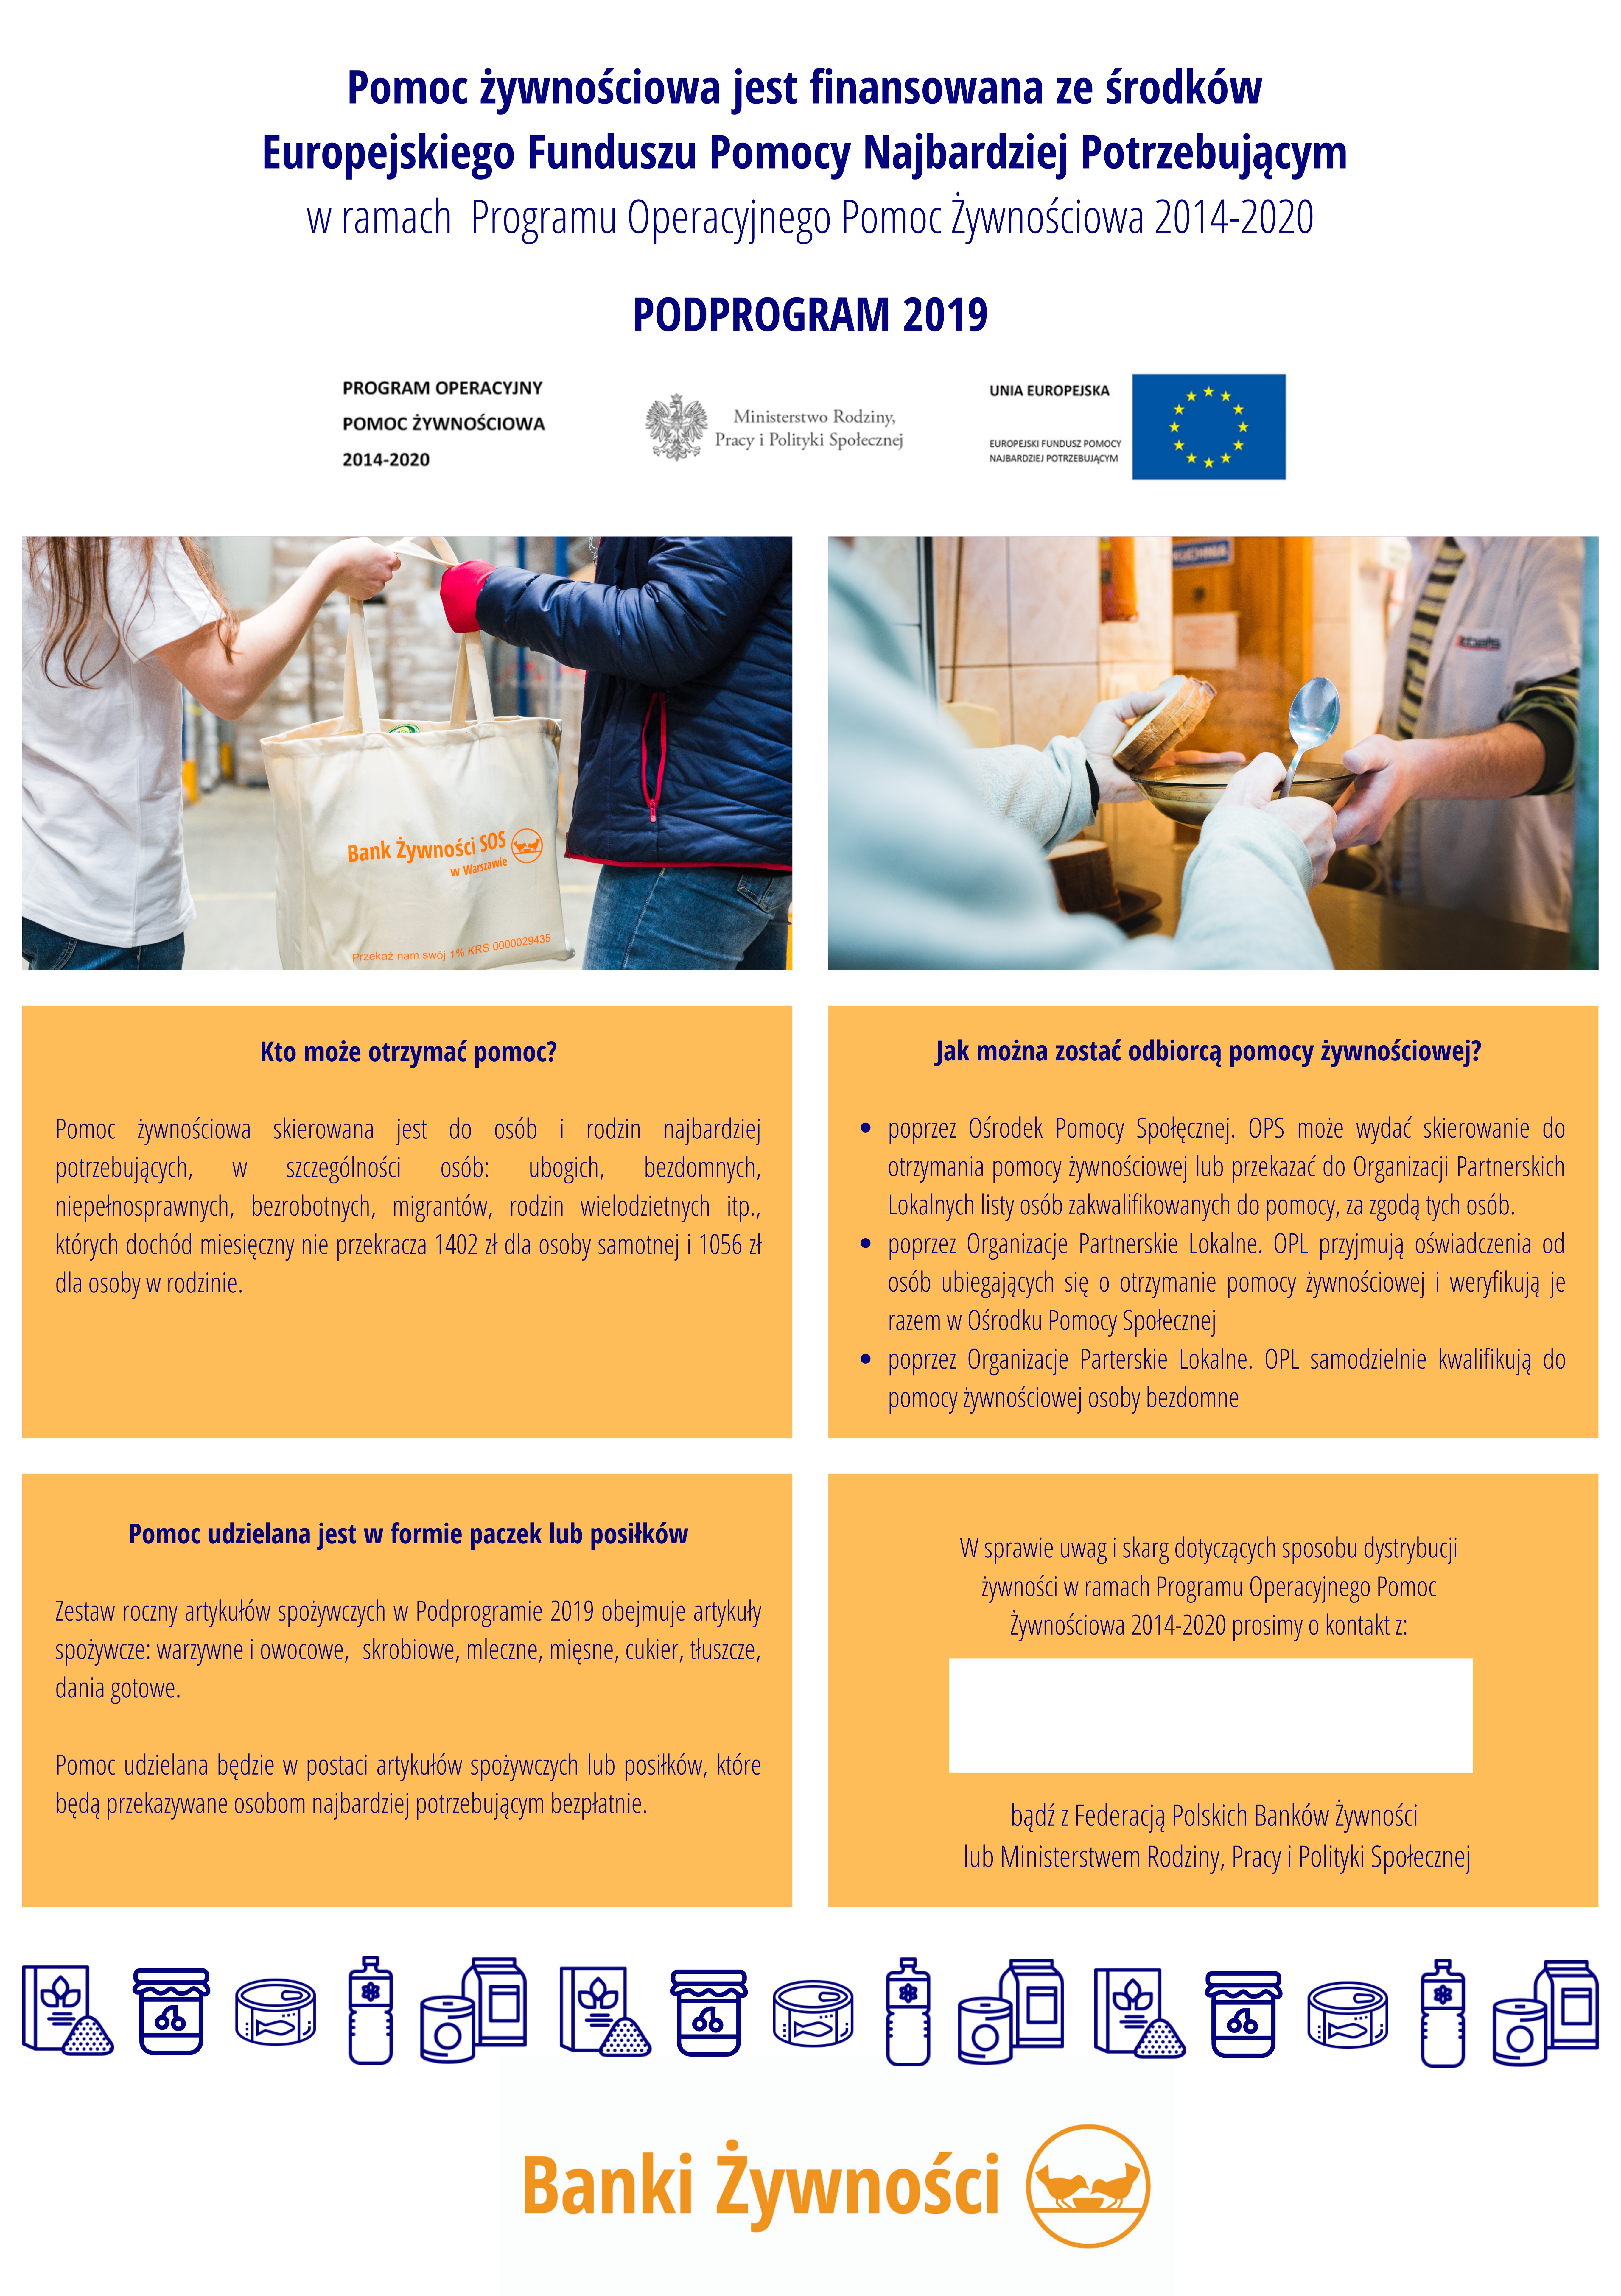 plakat zawierający informacje o podstawowych zasadach programu PO PŻ Podprogram 2019